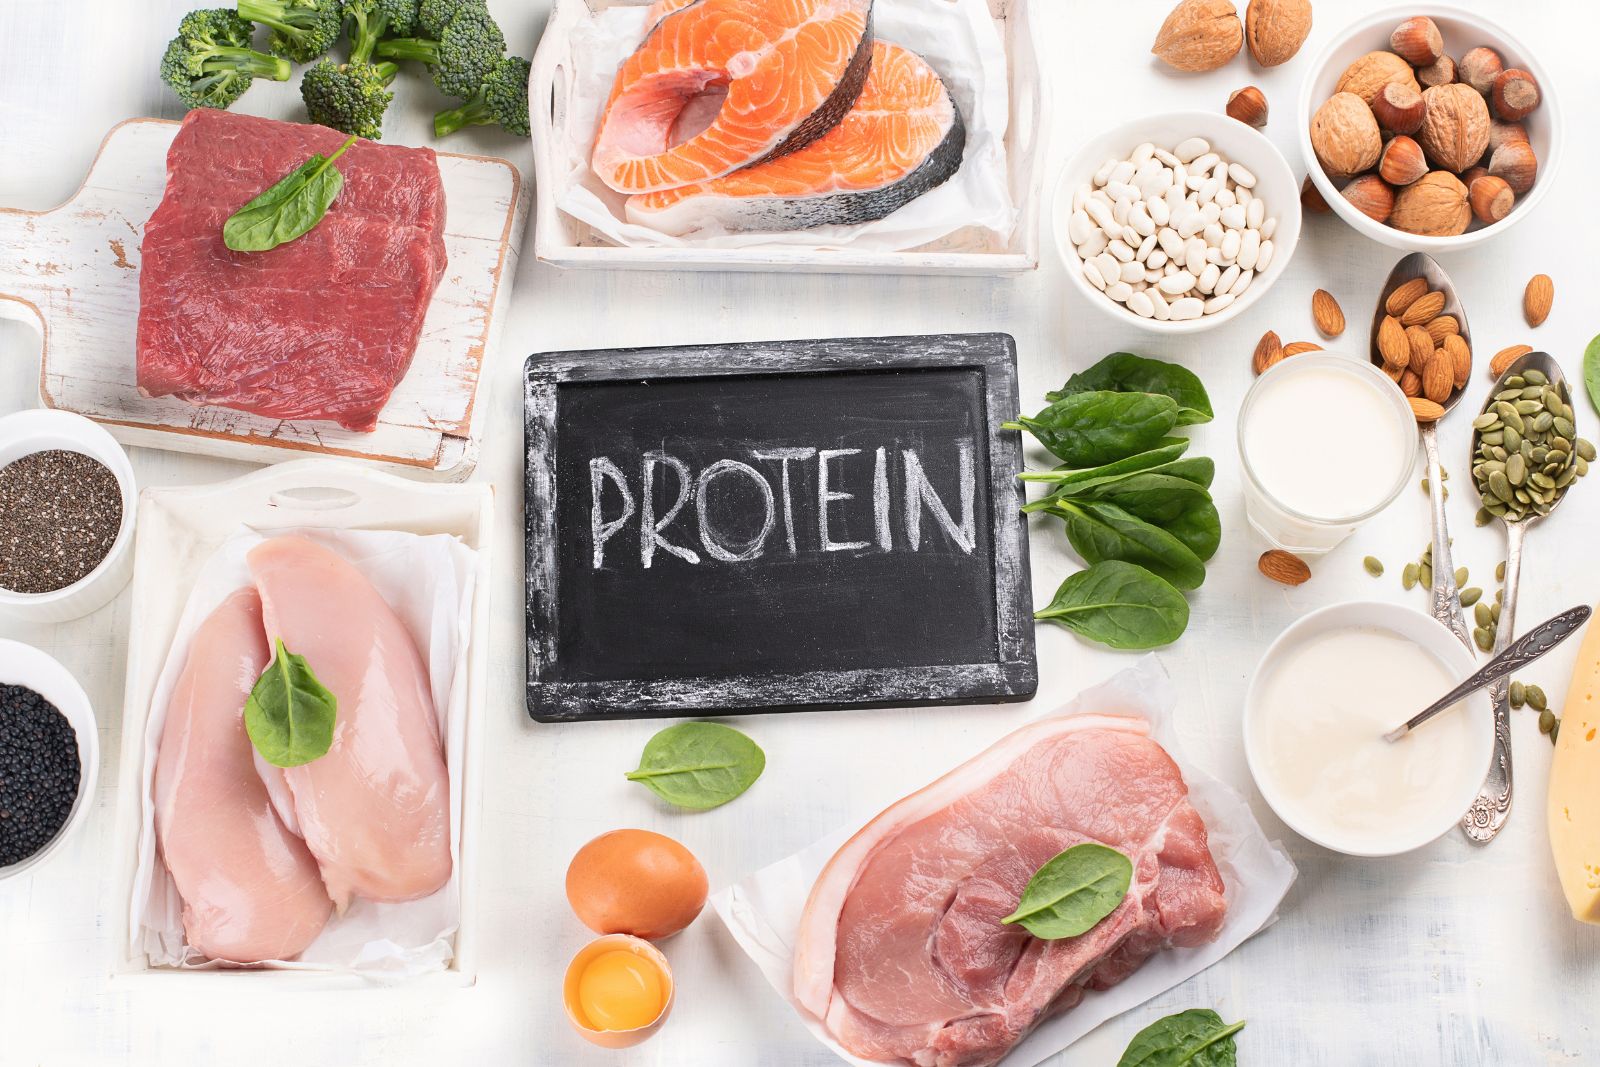 come le proteine favoriscono un metabolismo sano